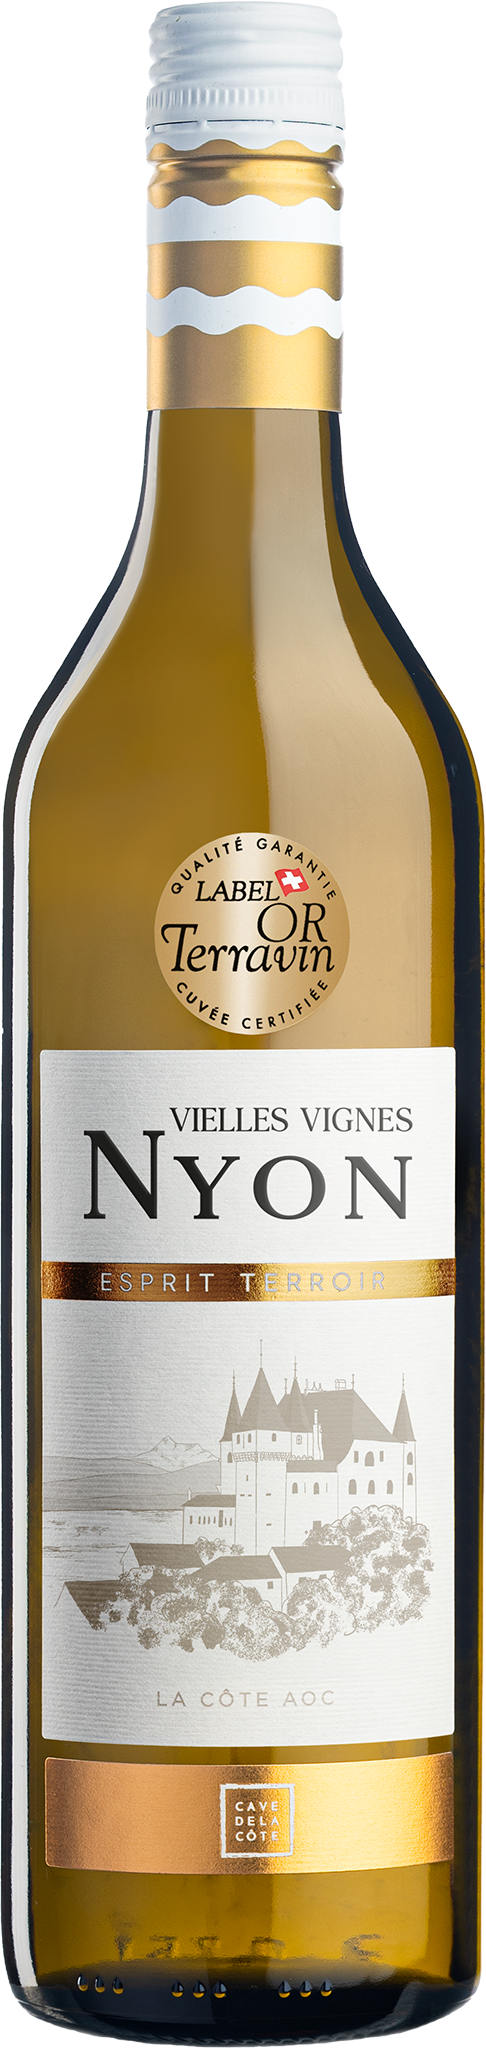 003890-75-Esprit Terroir Nyon Vieilles Vignes.png